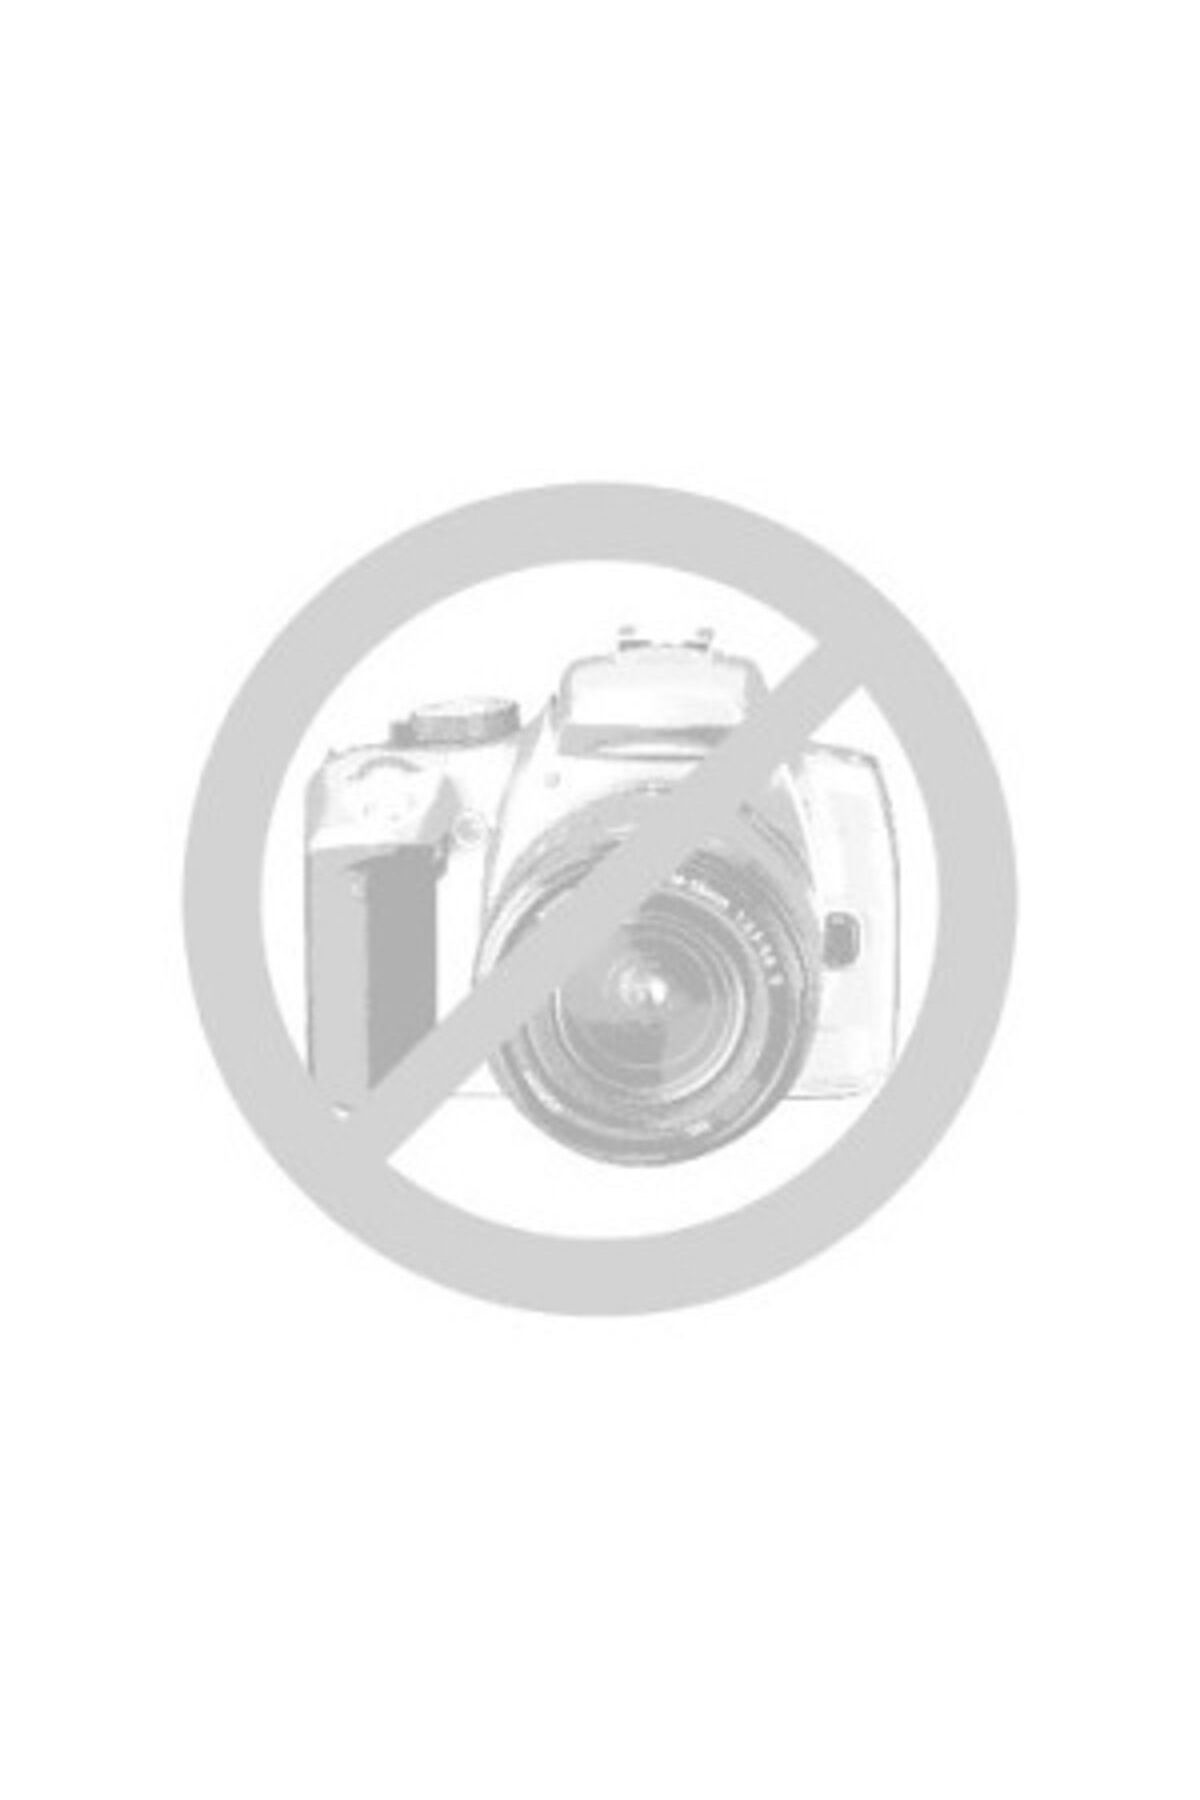 Canon Gx3040 Yazıcı-tarayıcı-fotokopi Renkli Mürekkep Tanklı Yazıcı Wı-fı